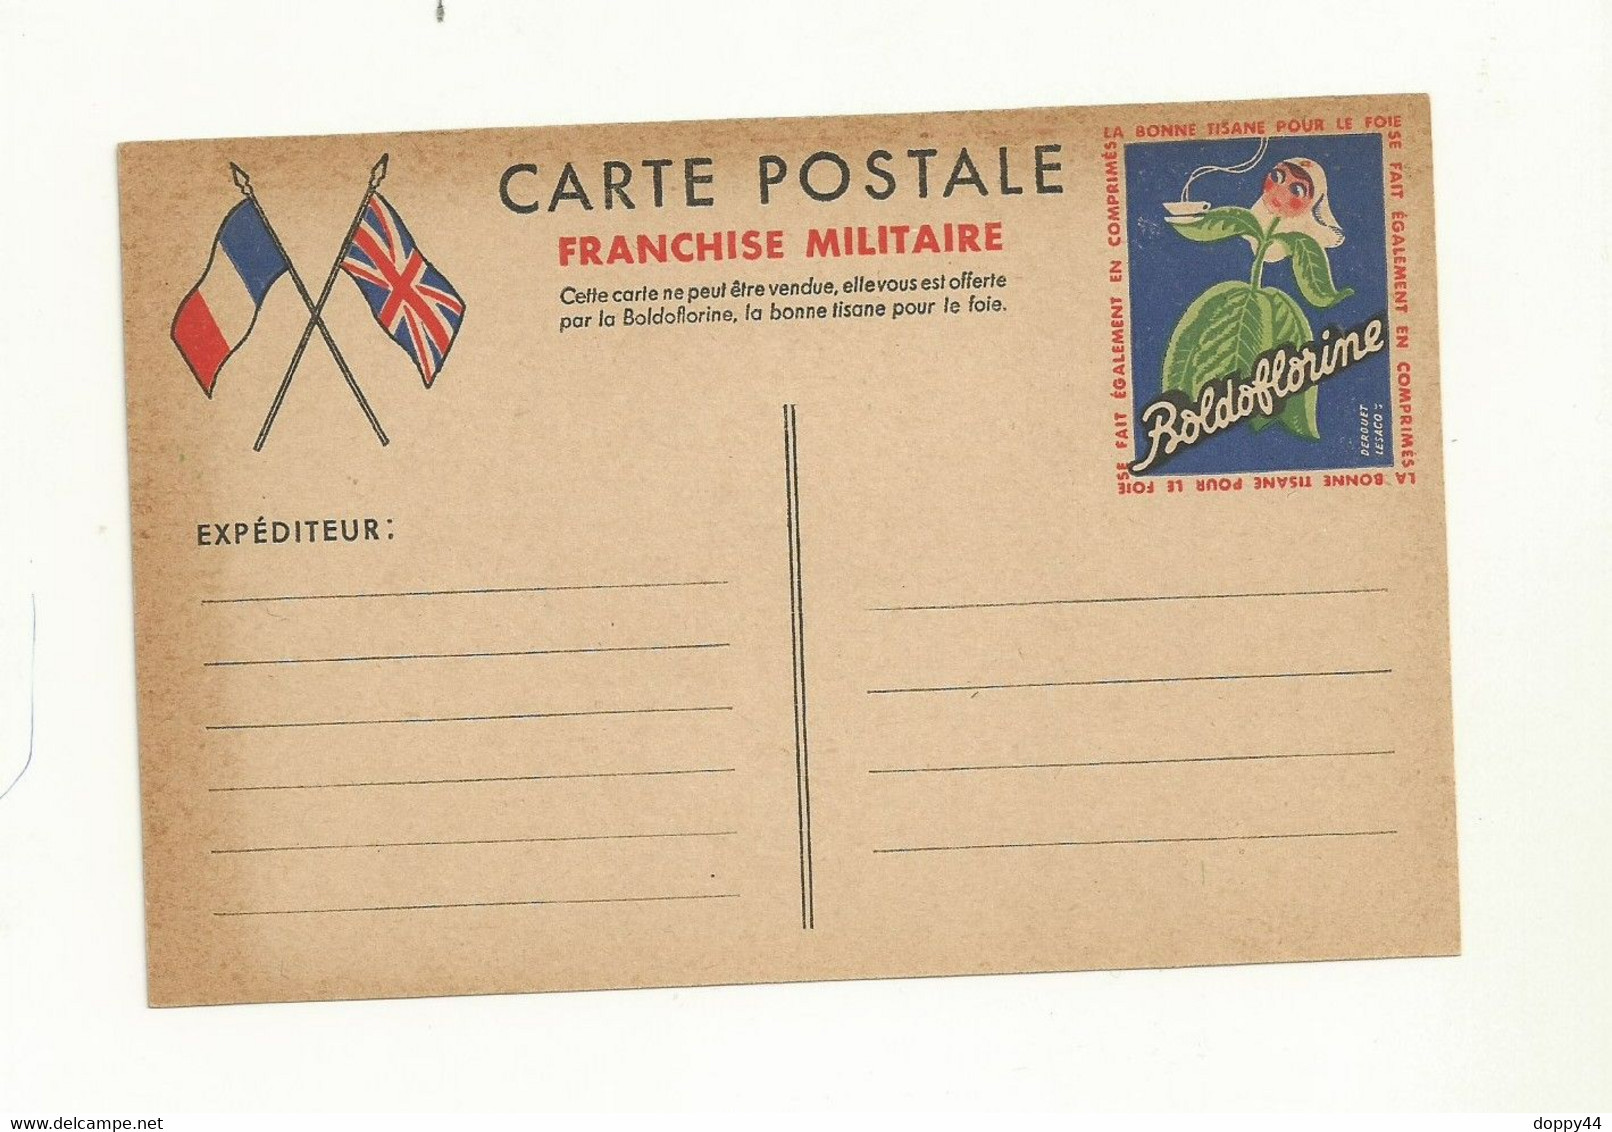 CARTE DE FRANCHISE MILITAIRE PUBLICITAIRE ( BOLDOFLORINE). Neuve Avec Rousseur Sur Les Cotés) - Pseudo-officiële  Postwaardestukken